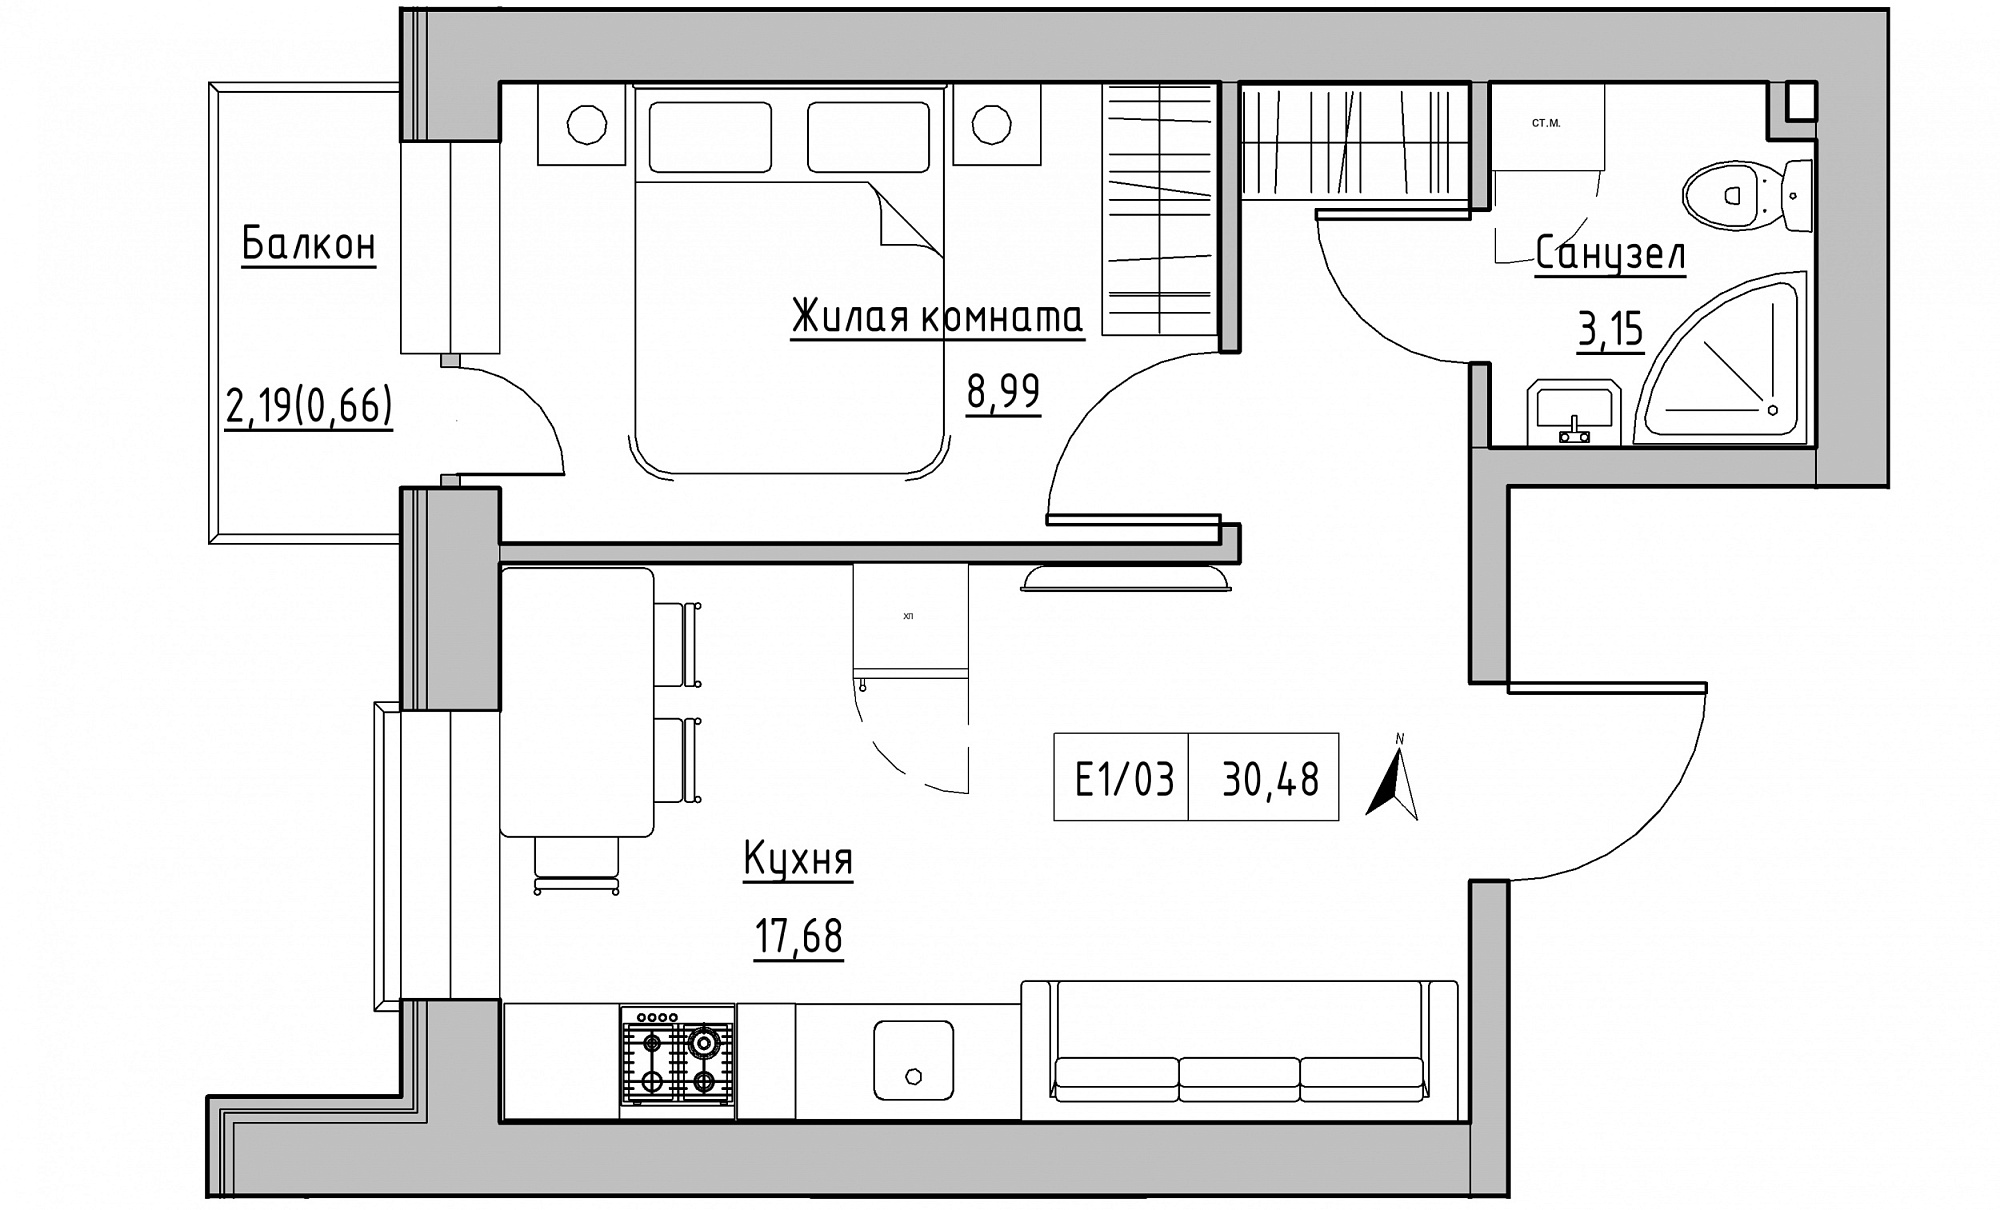 Планування 1-к квартира площею 30.48м2, KS-015-04/0003.